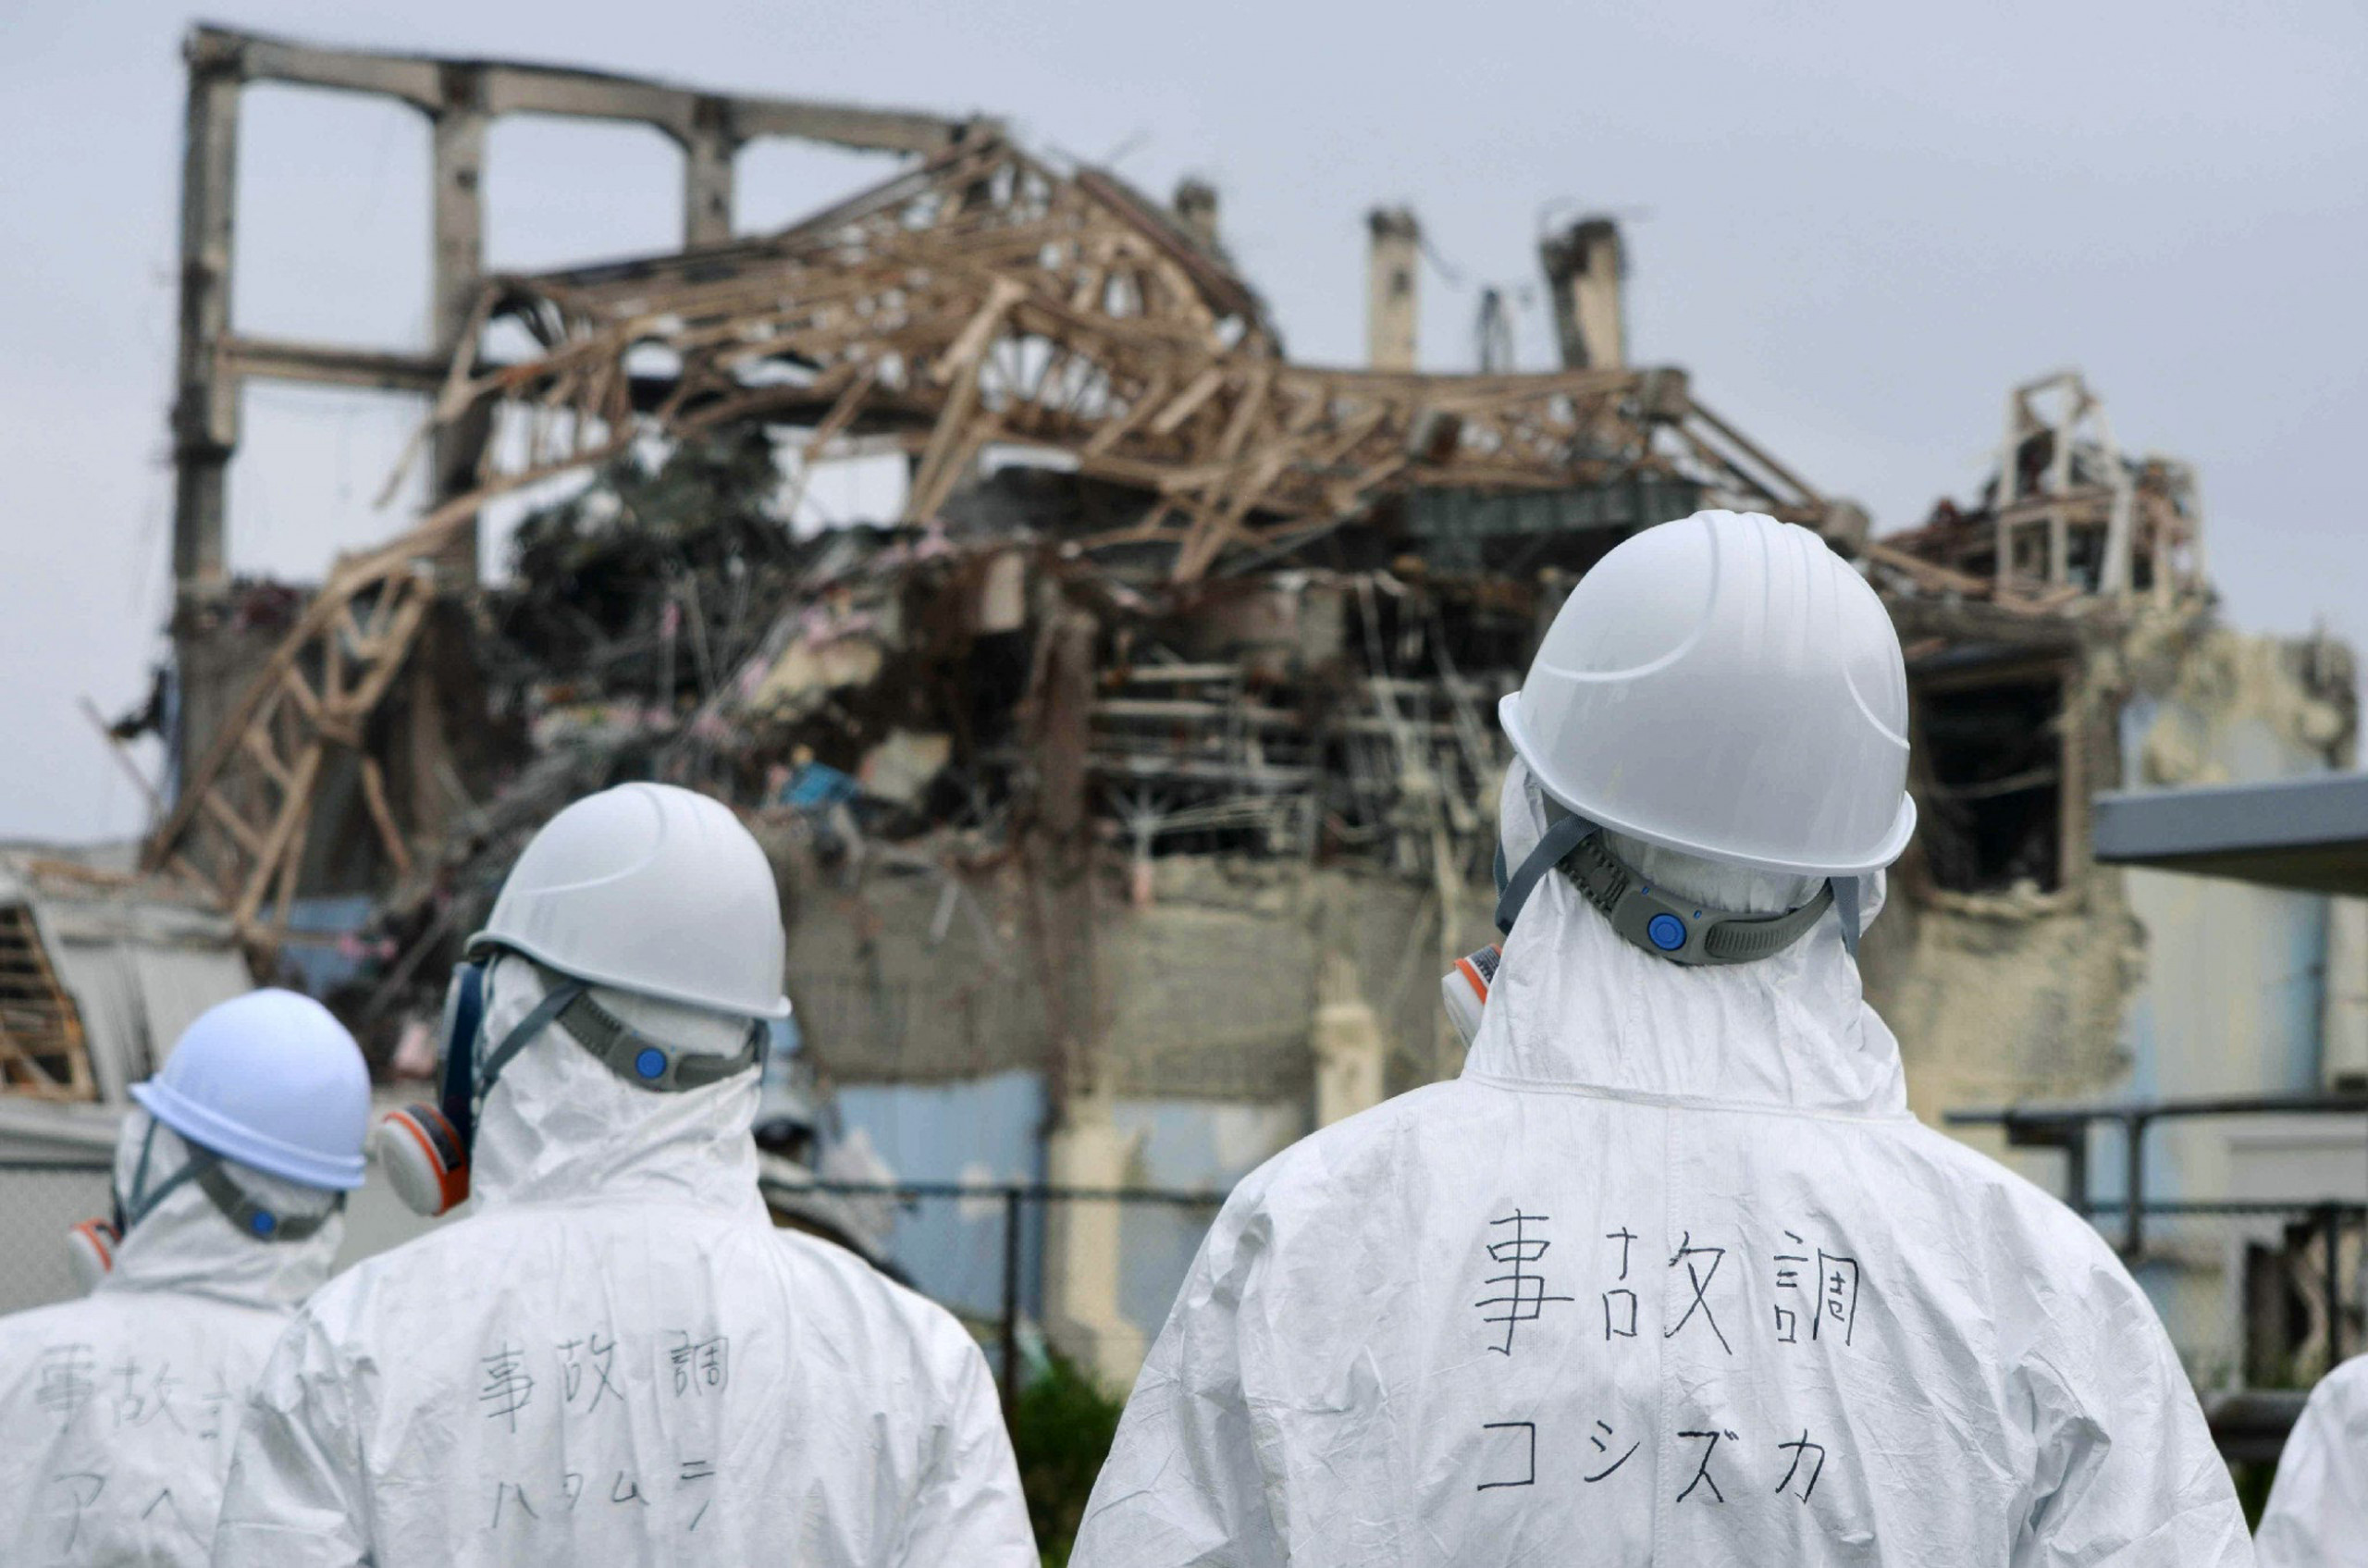 Авария на аэс в японии. Японии на АЭС «Фукусима-1». Авария на АЭС Фукусима-1. АЭС Фукусима-1, Япония, 2011. АЭС Фукусима 2011.